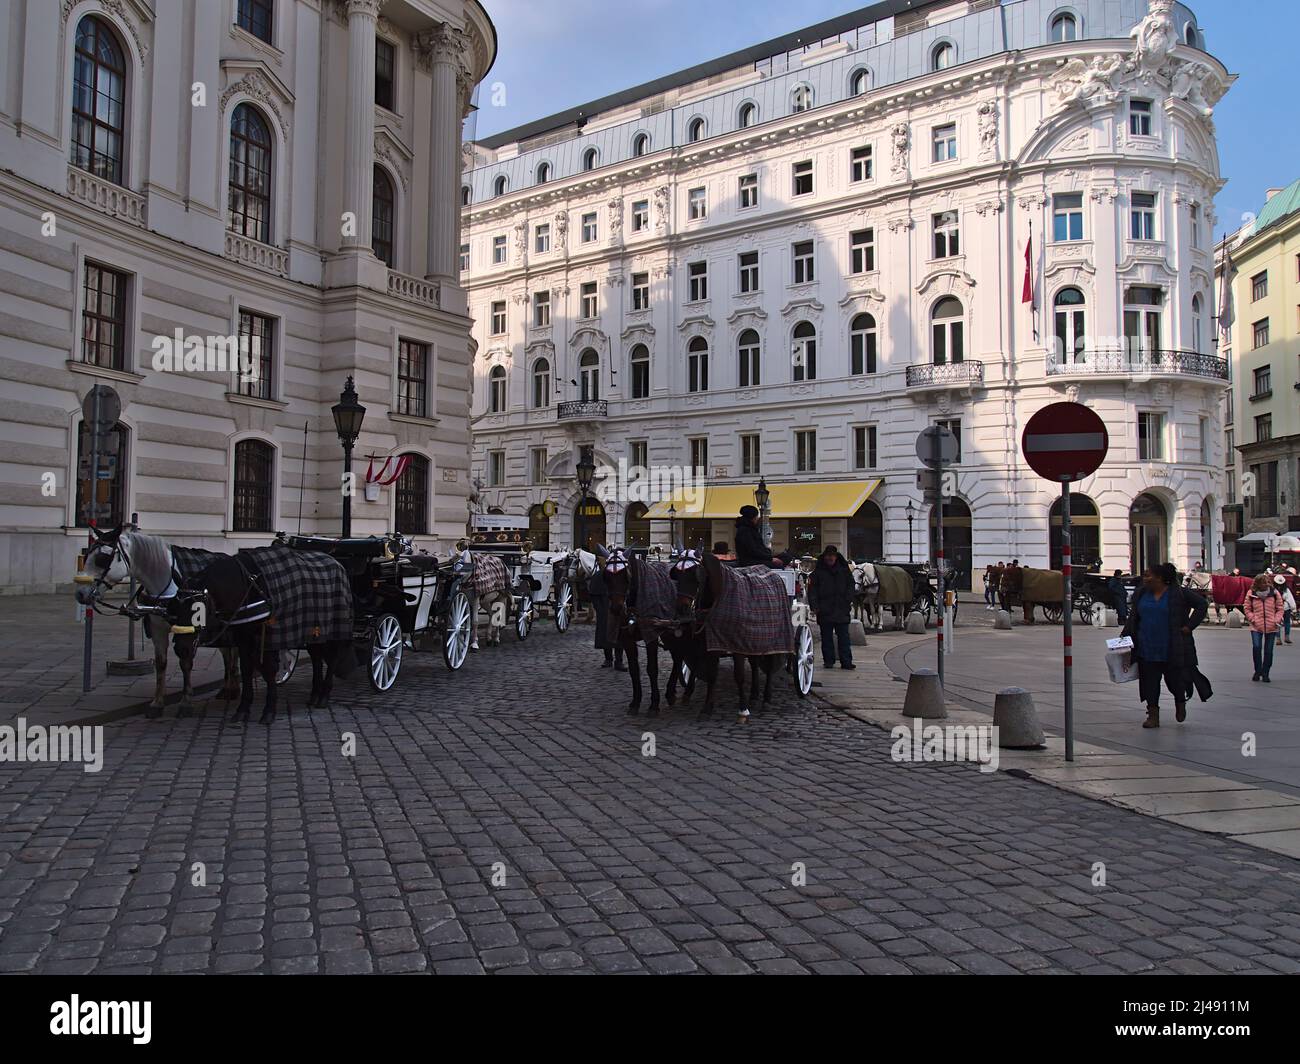 Scena affollata nella famosa piazza Michaelerplatz nel centro storico di Vienna, Austria, con carrozze trainate da cavalli in attesa di turisti. Foto Stock